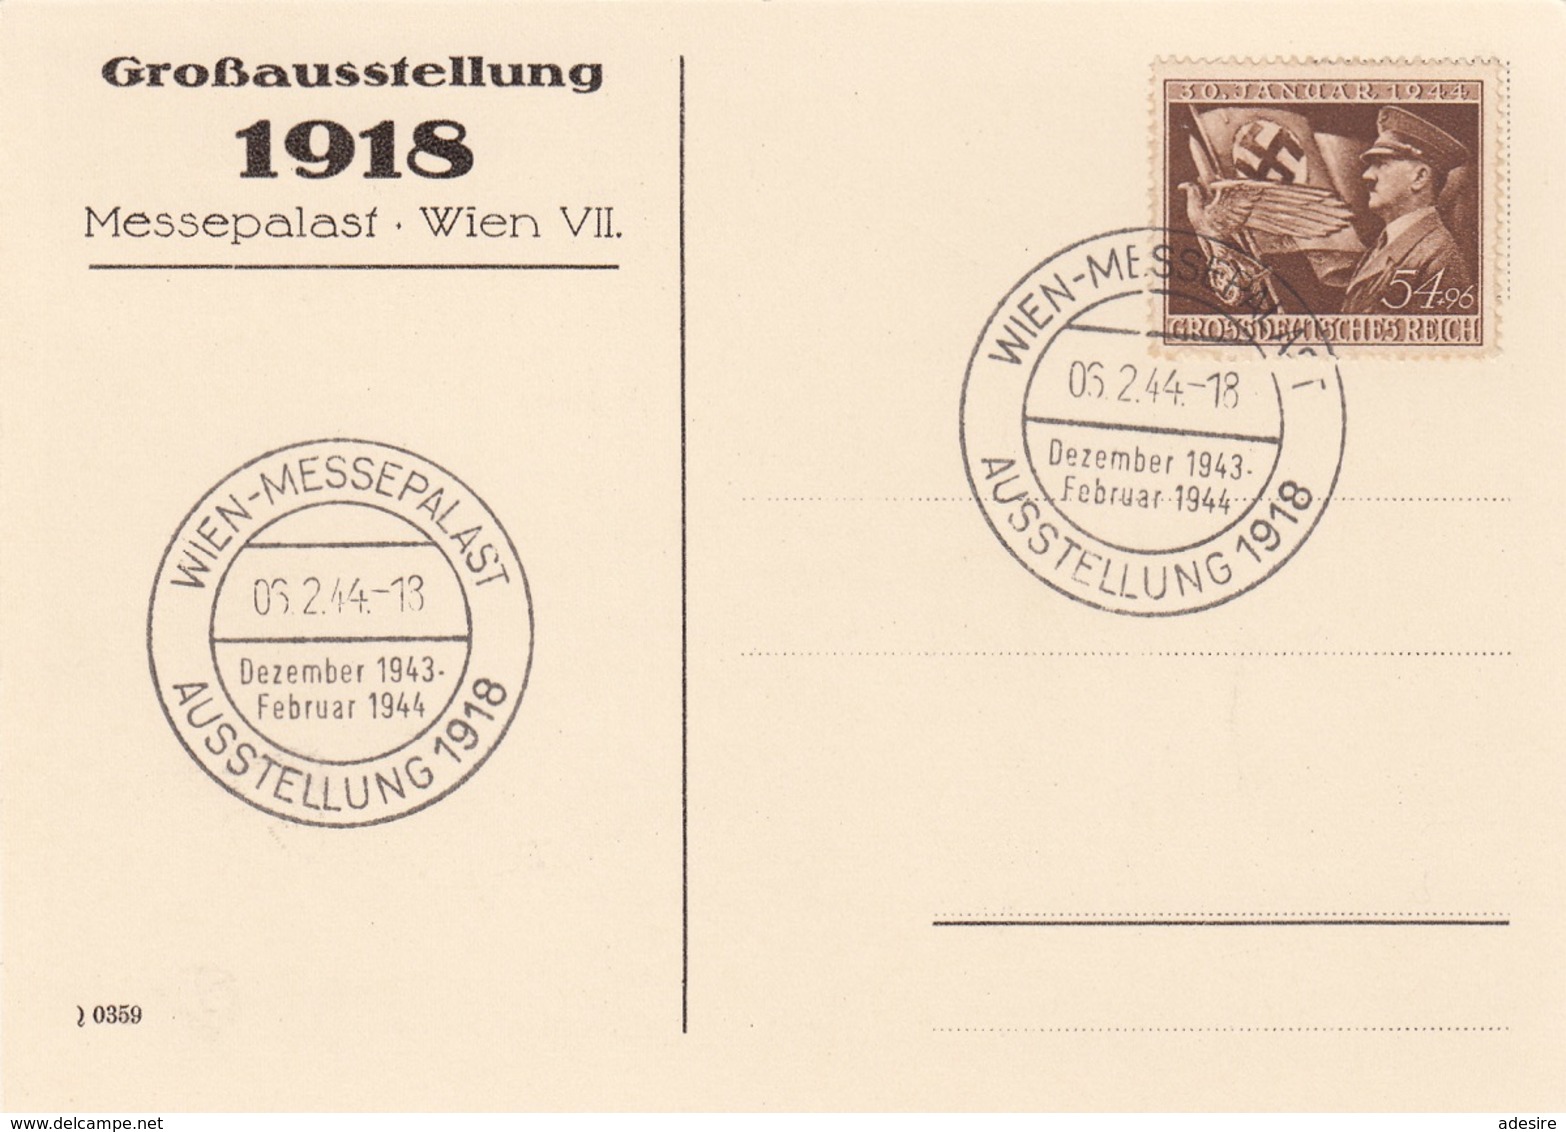 DEUTSCHES REICH 1943/44 - MASSENKUNDGEBUNG - GROSSAUSSTELLUNG 1918, 1943/1944 - Stempel Wien Messepallast Mit Deut ... - Lettres & Documents